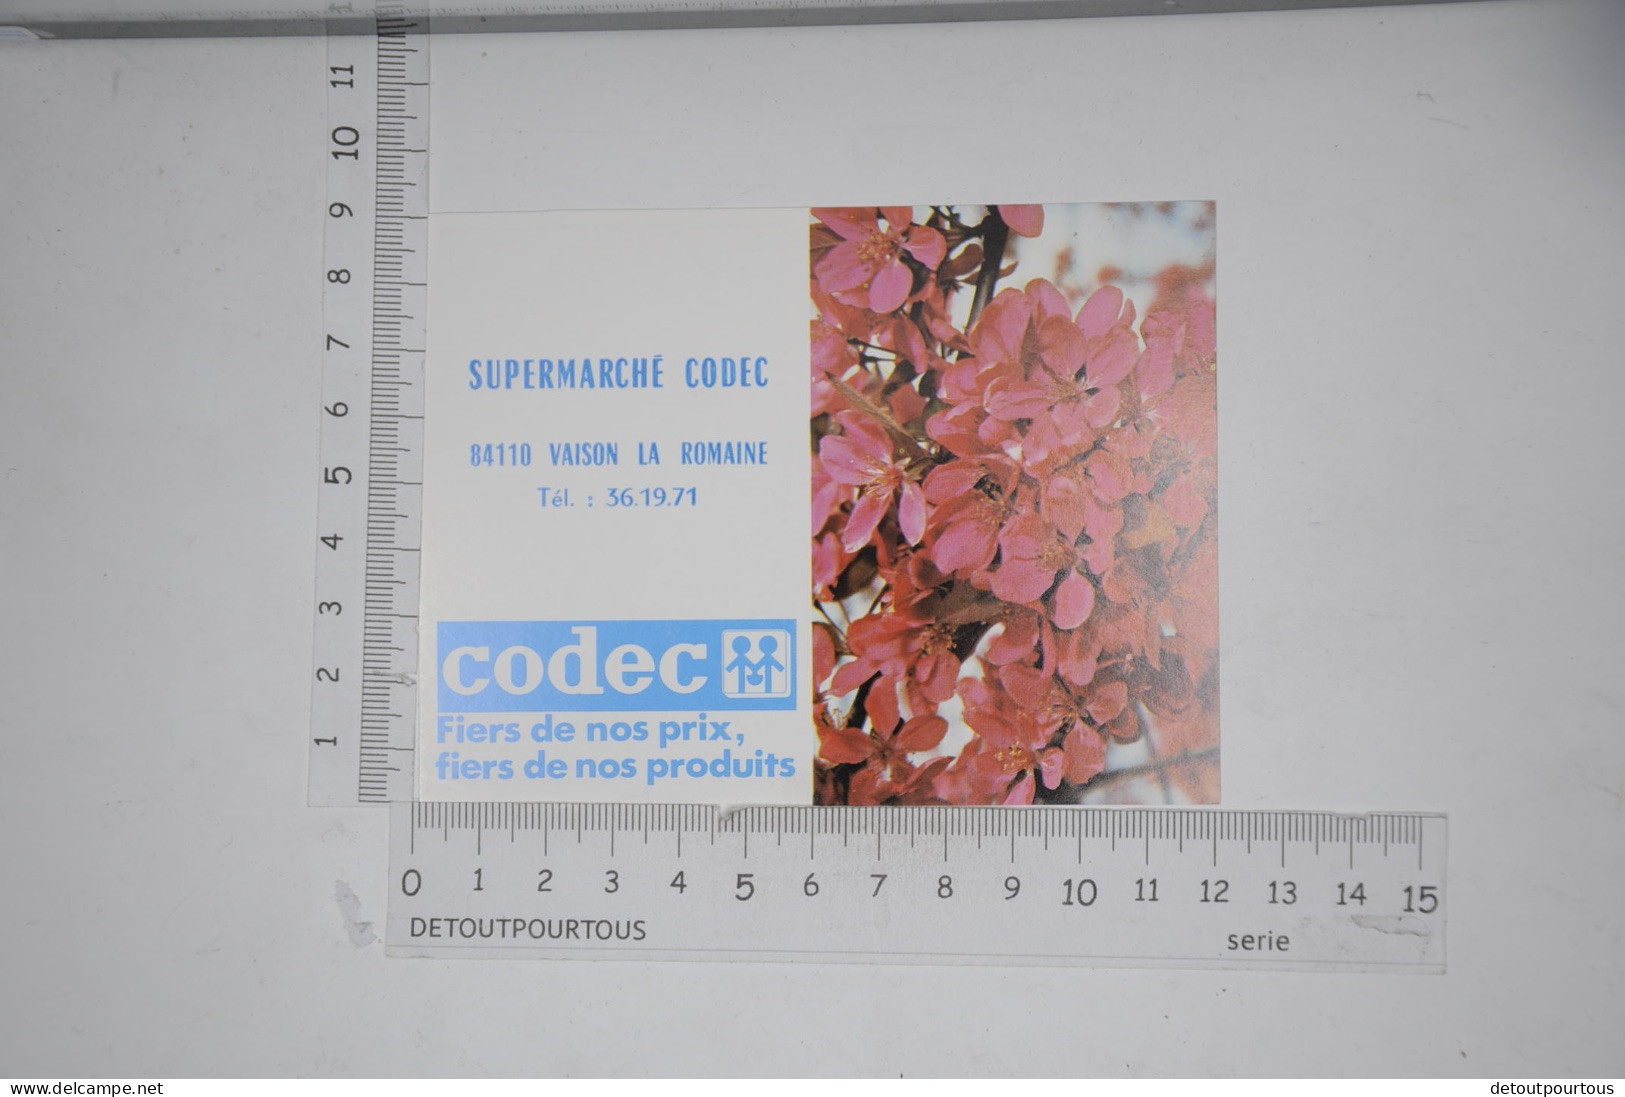 Lot de 9 calendriers mini calendrier 1984 Supermarché CODEC 84110 Vaison la Romaine / illustration serie fleurs fleur